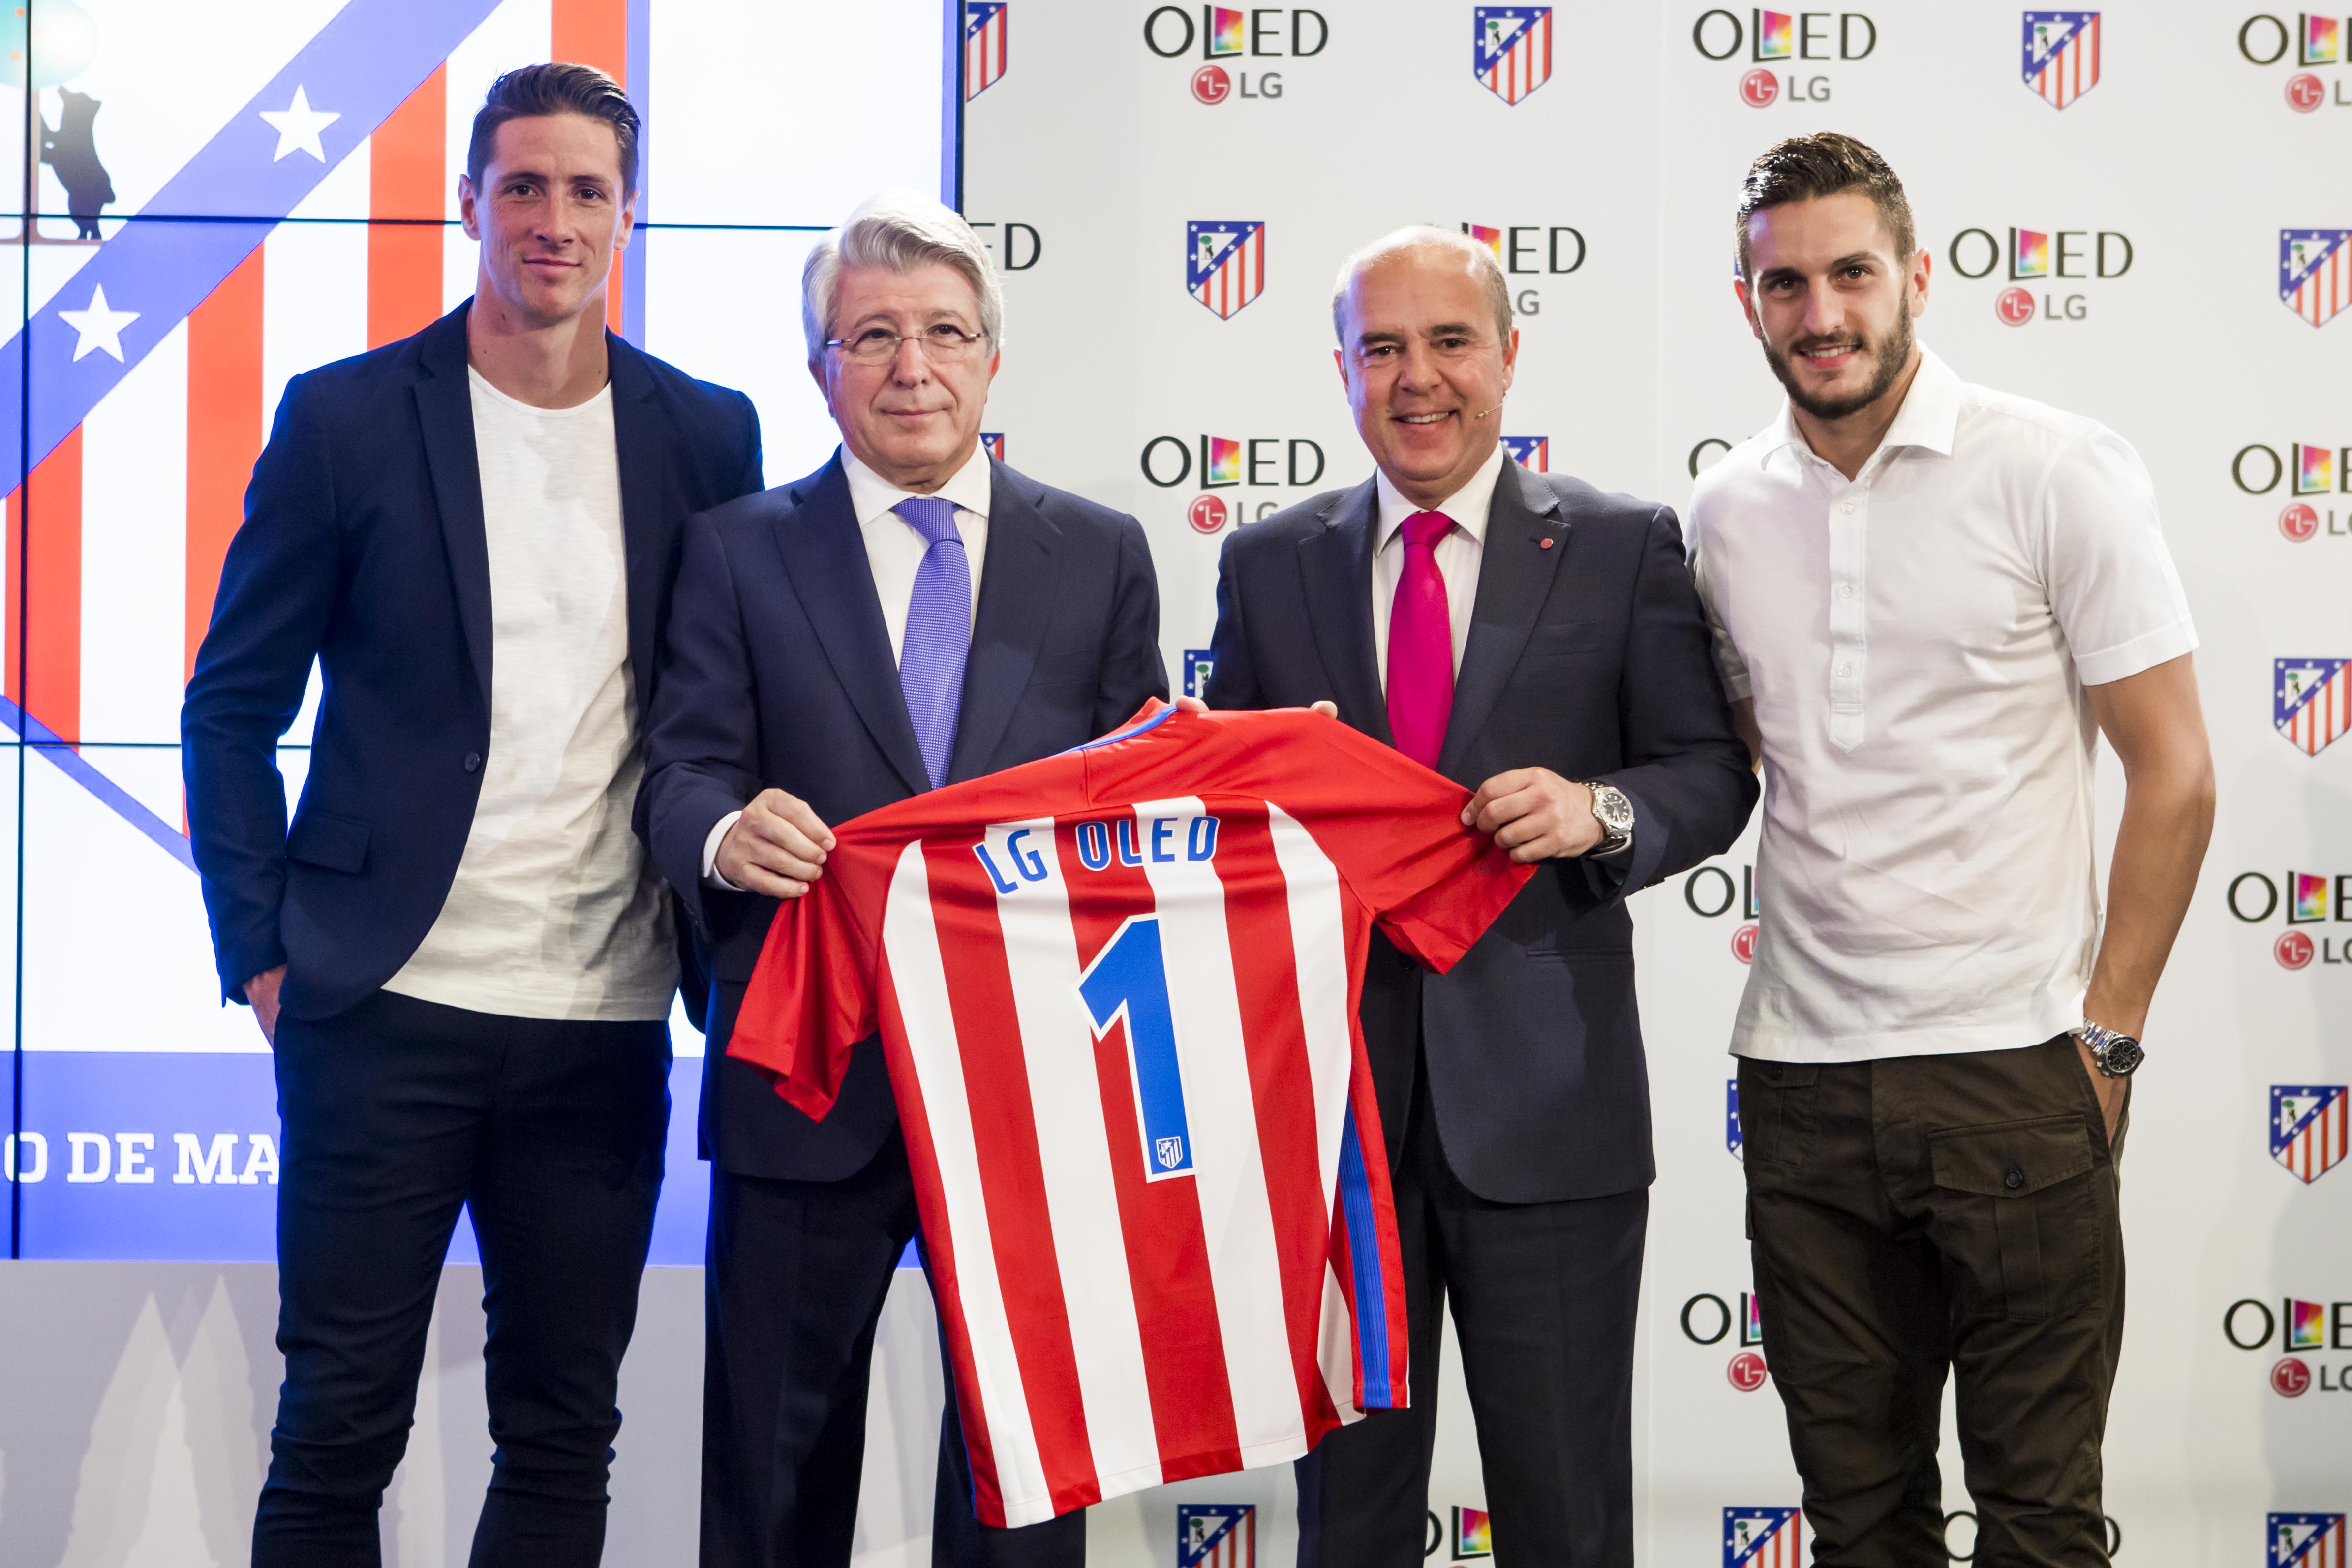 LG OLED nuevo proveedor tecnológico del Atlético de Madrid